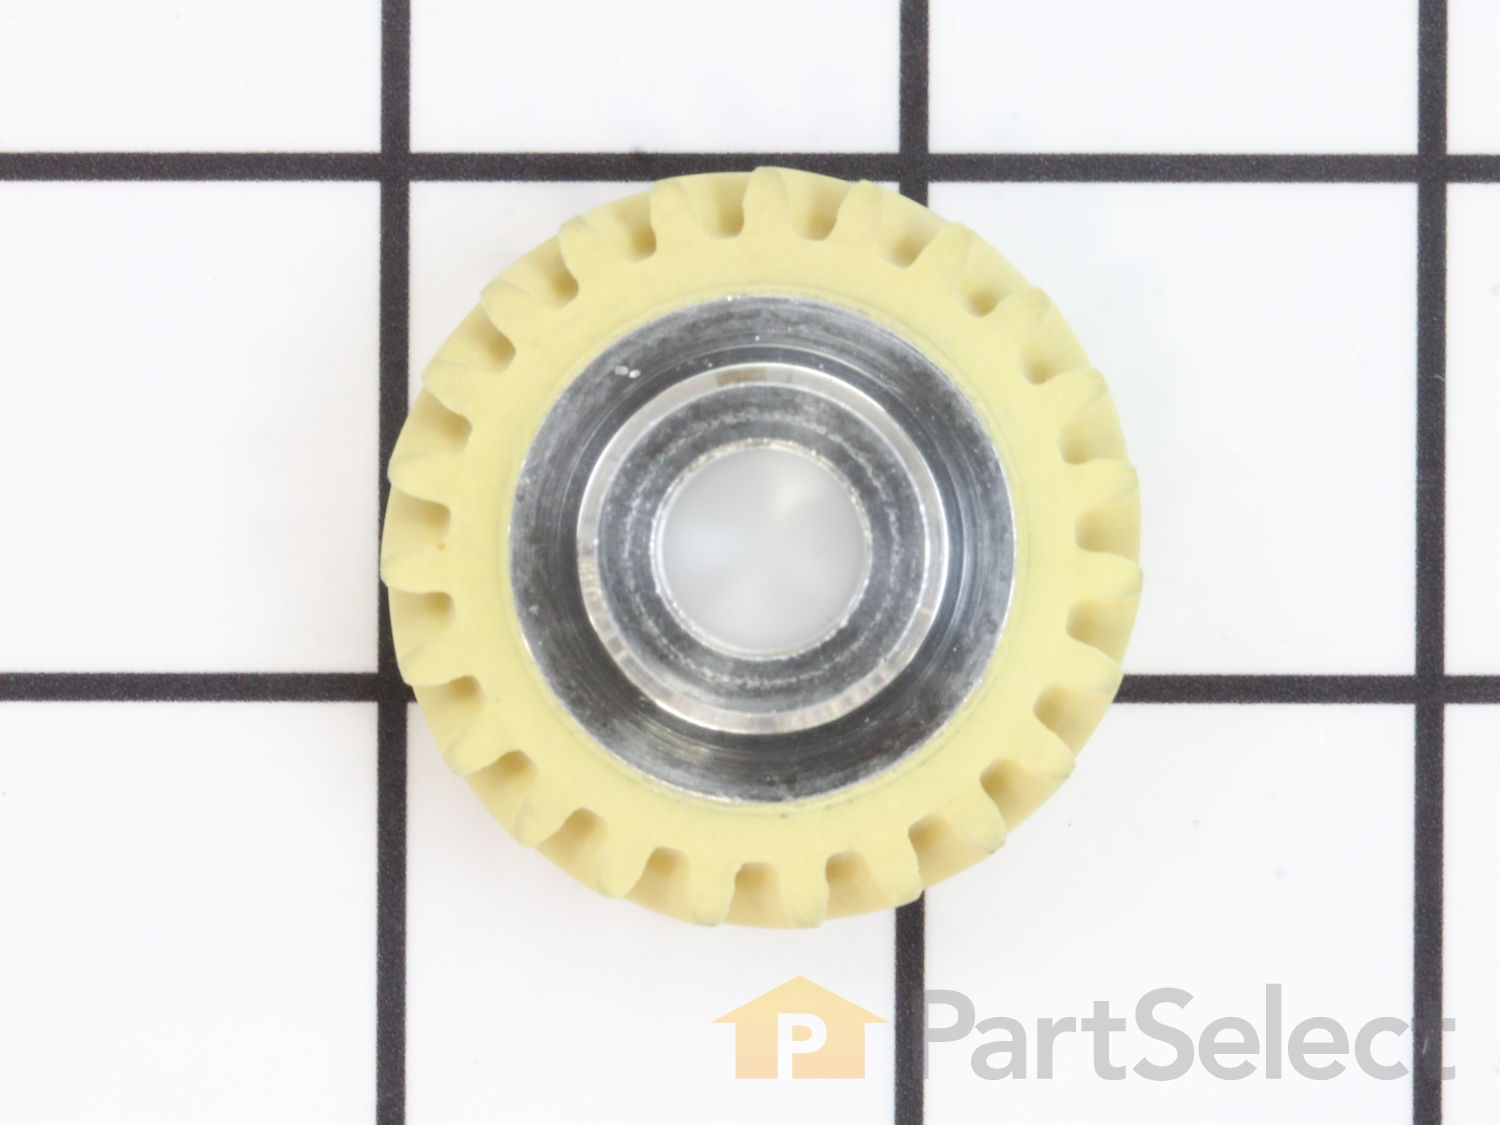 FAIOIN Ultra Durable W10112253 Mixer Worm Gear Replacement Part